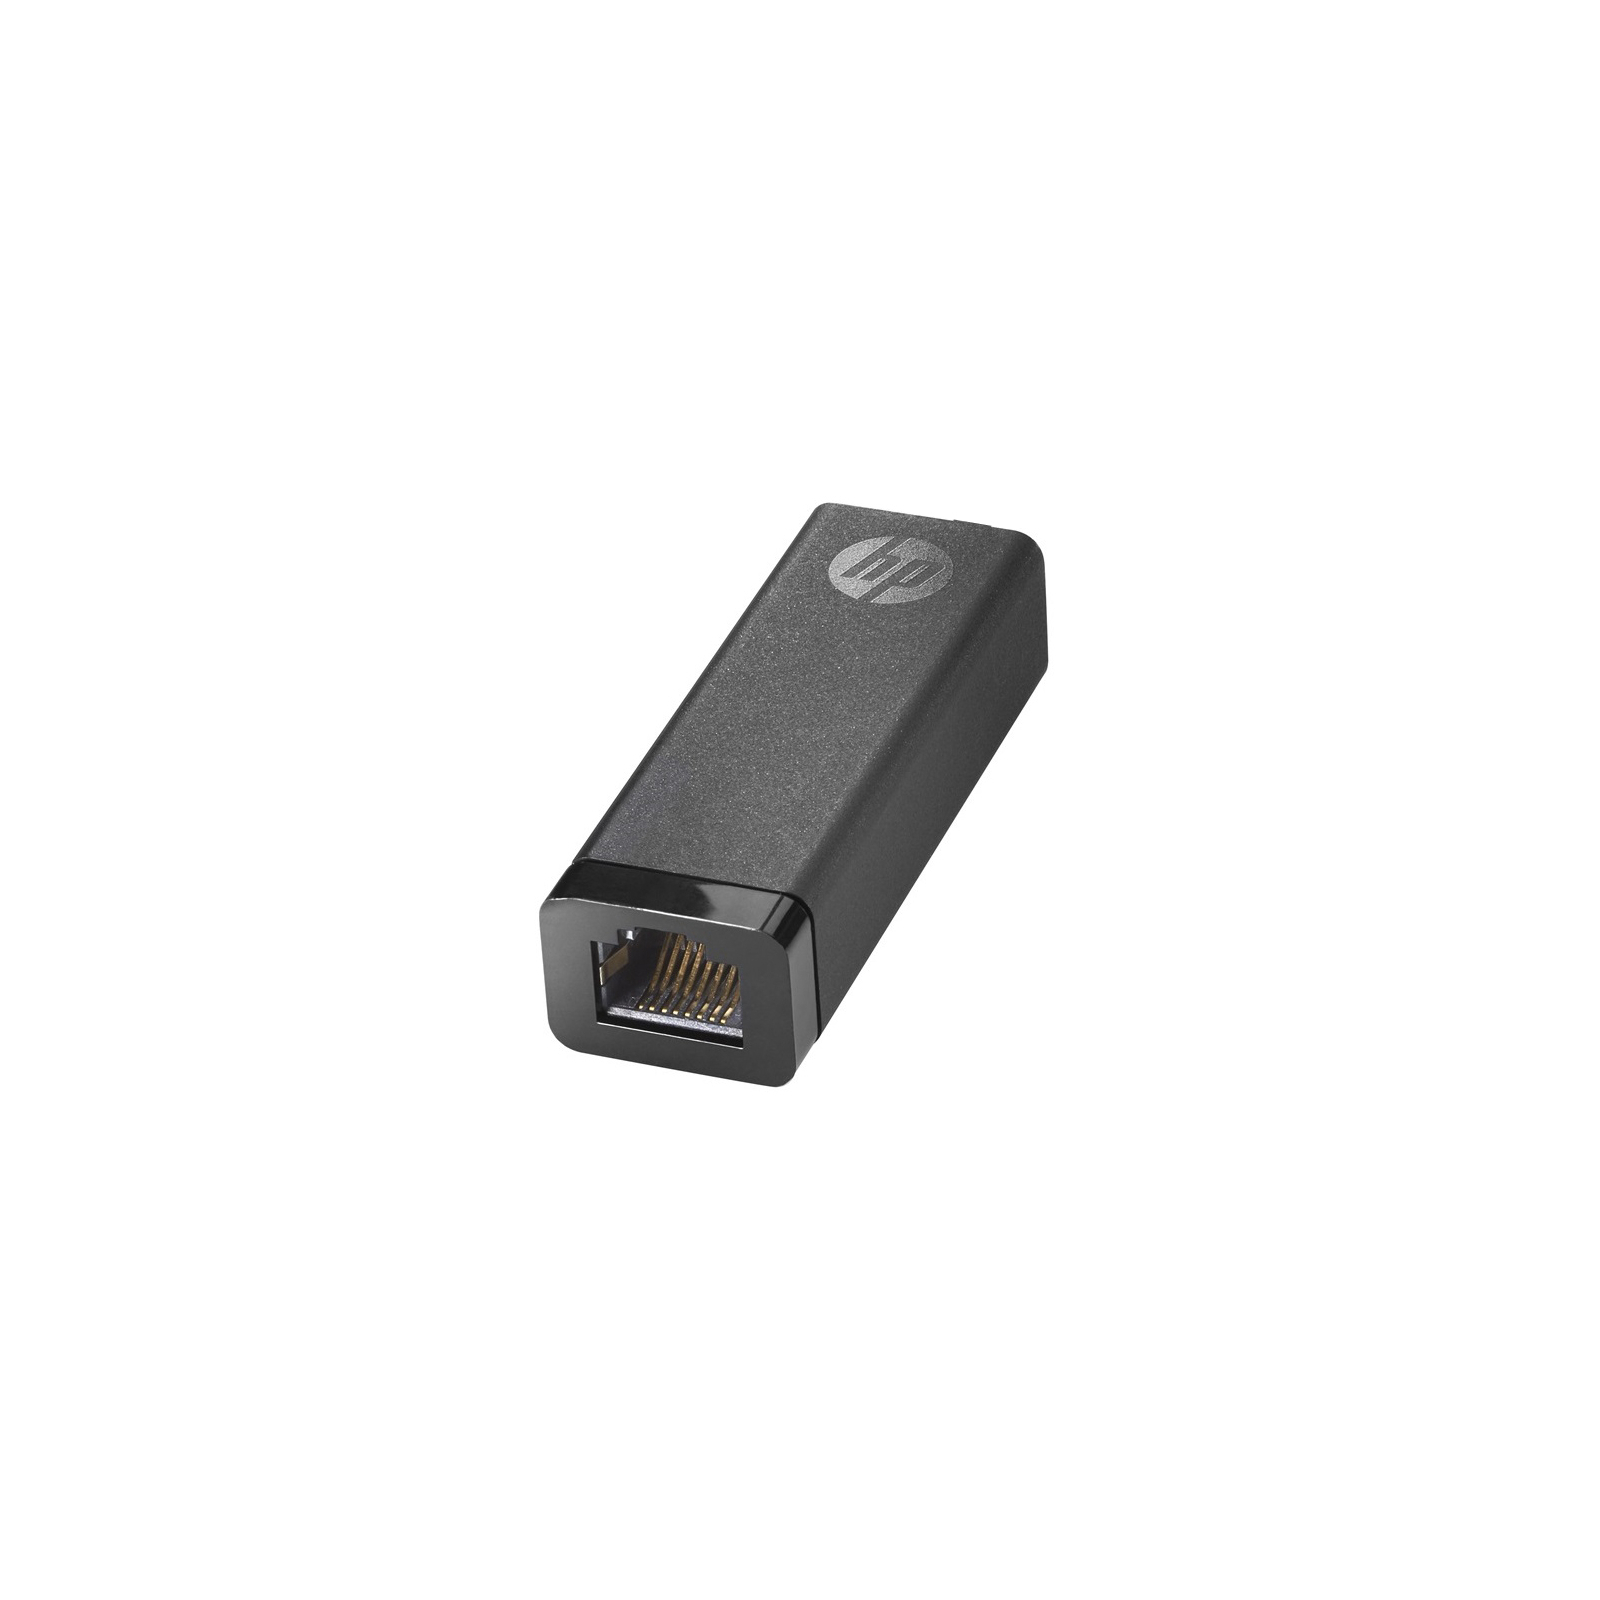 Перехідник HP USB 3.0 to Gigabit Adapter (N7P47AA) зображення 2